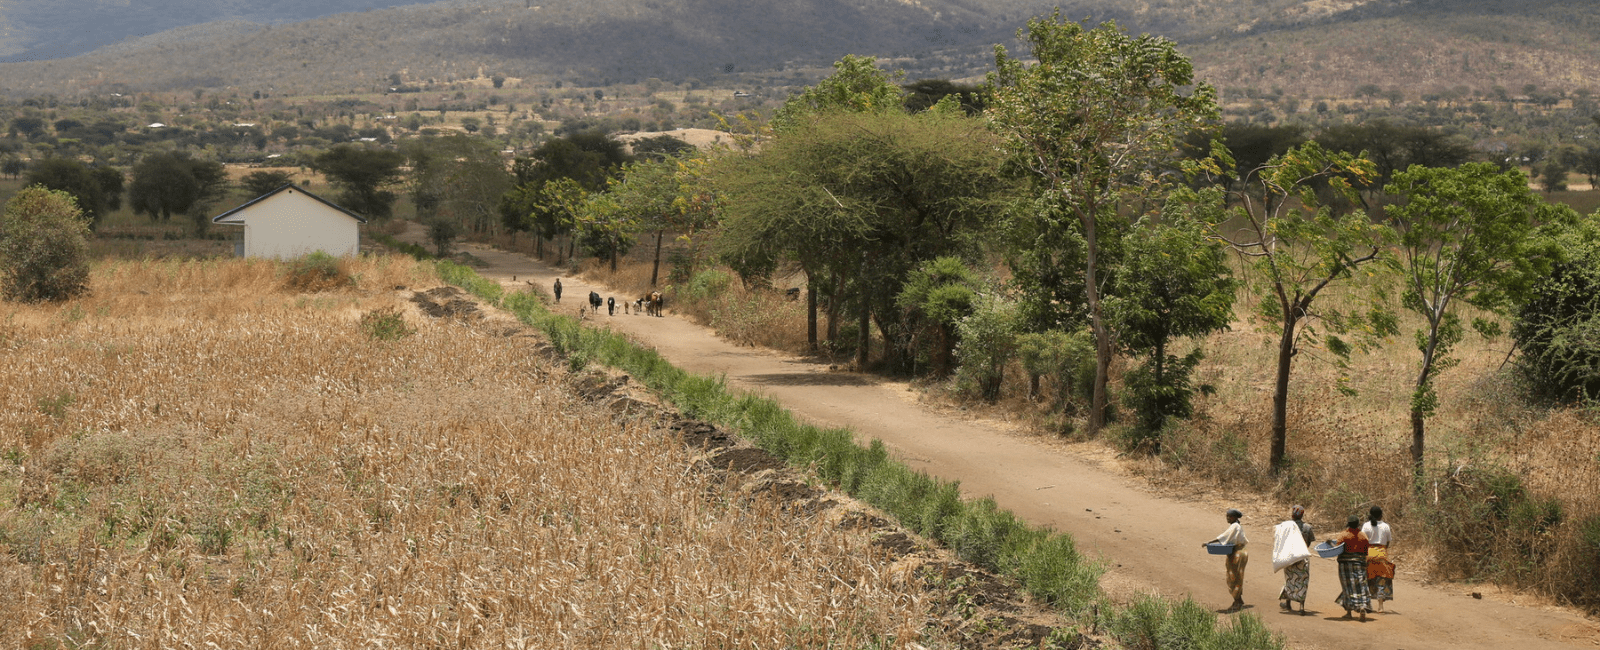 People walking down a road in Tanzania